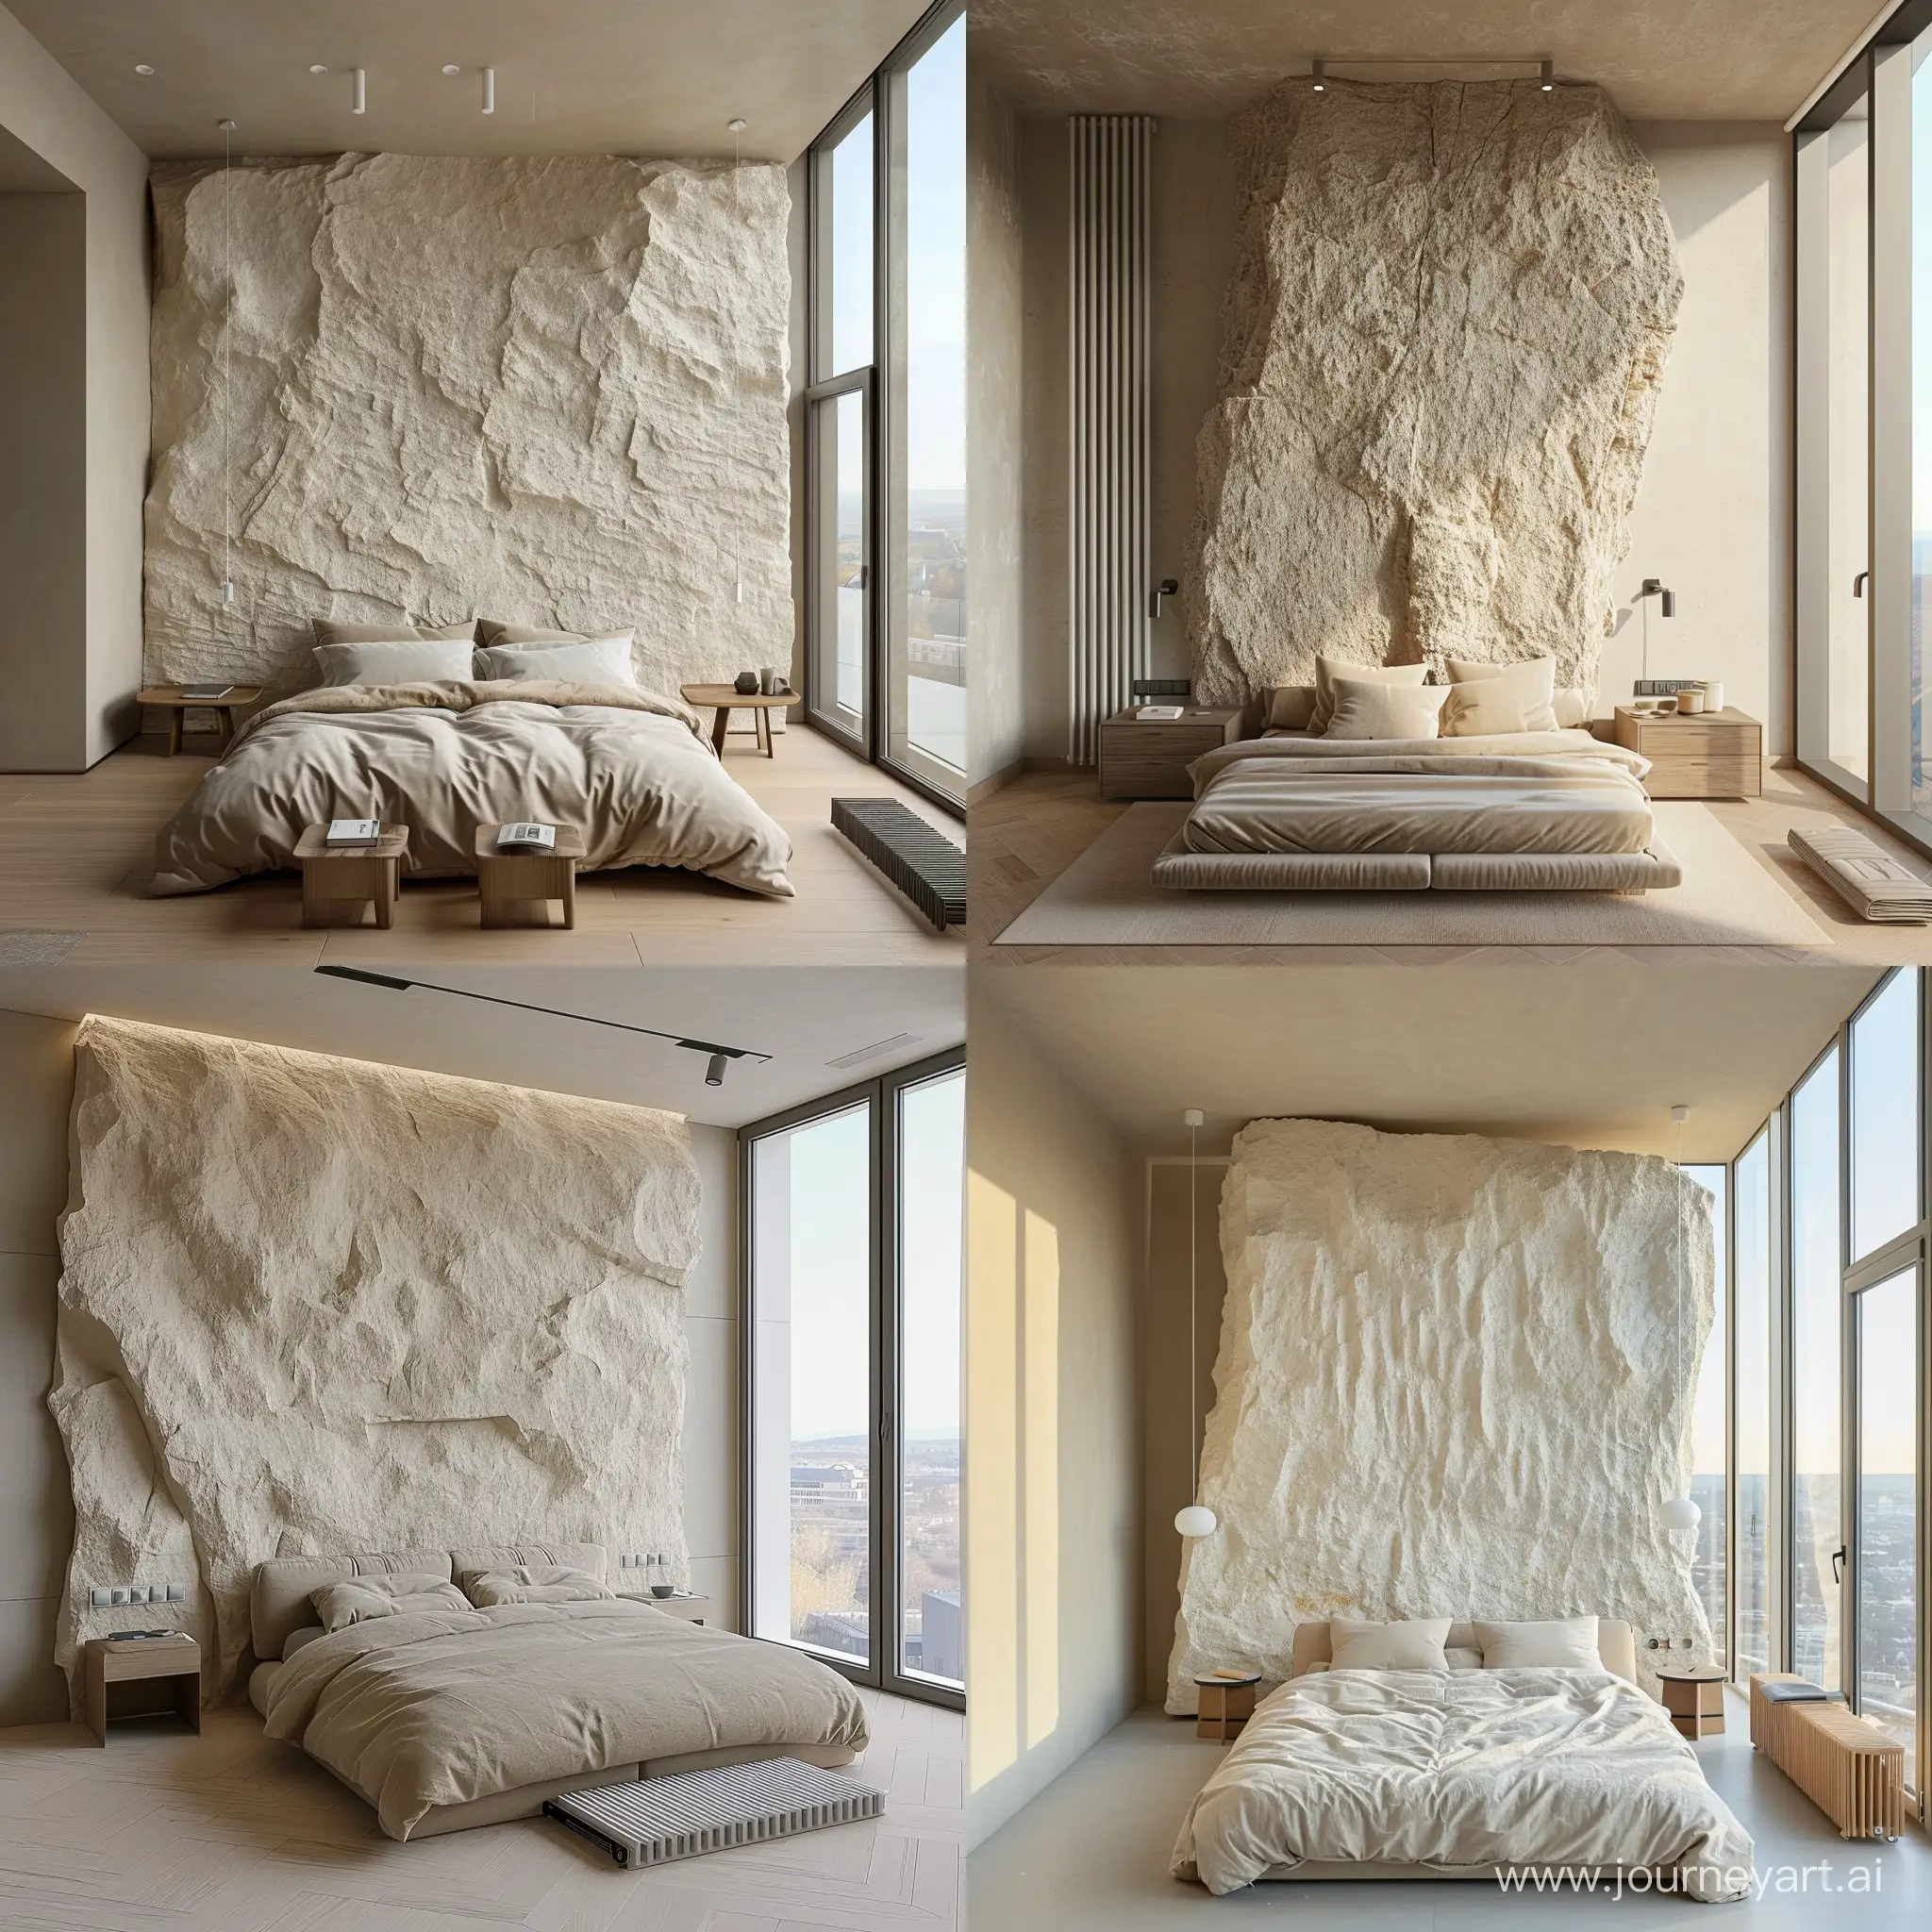 спальня минимализм, скала на стене светлая, кровать мягкая, тумбочки, окна в пол, радиатор напольный, 